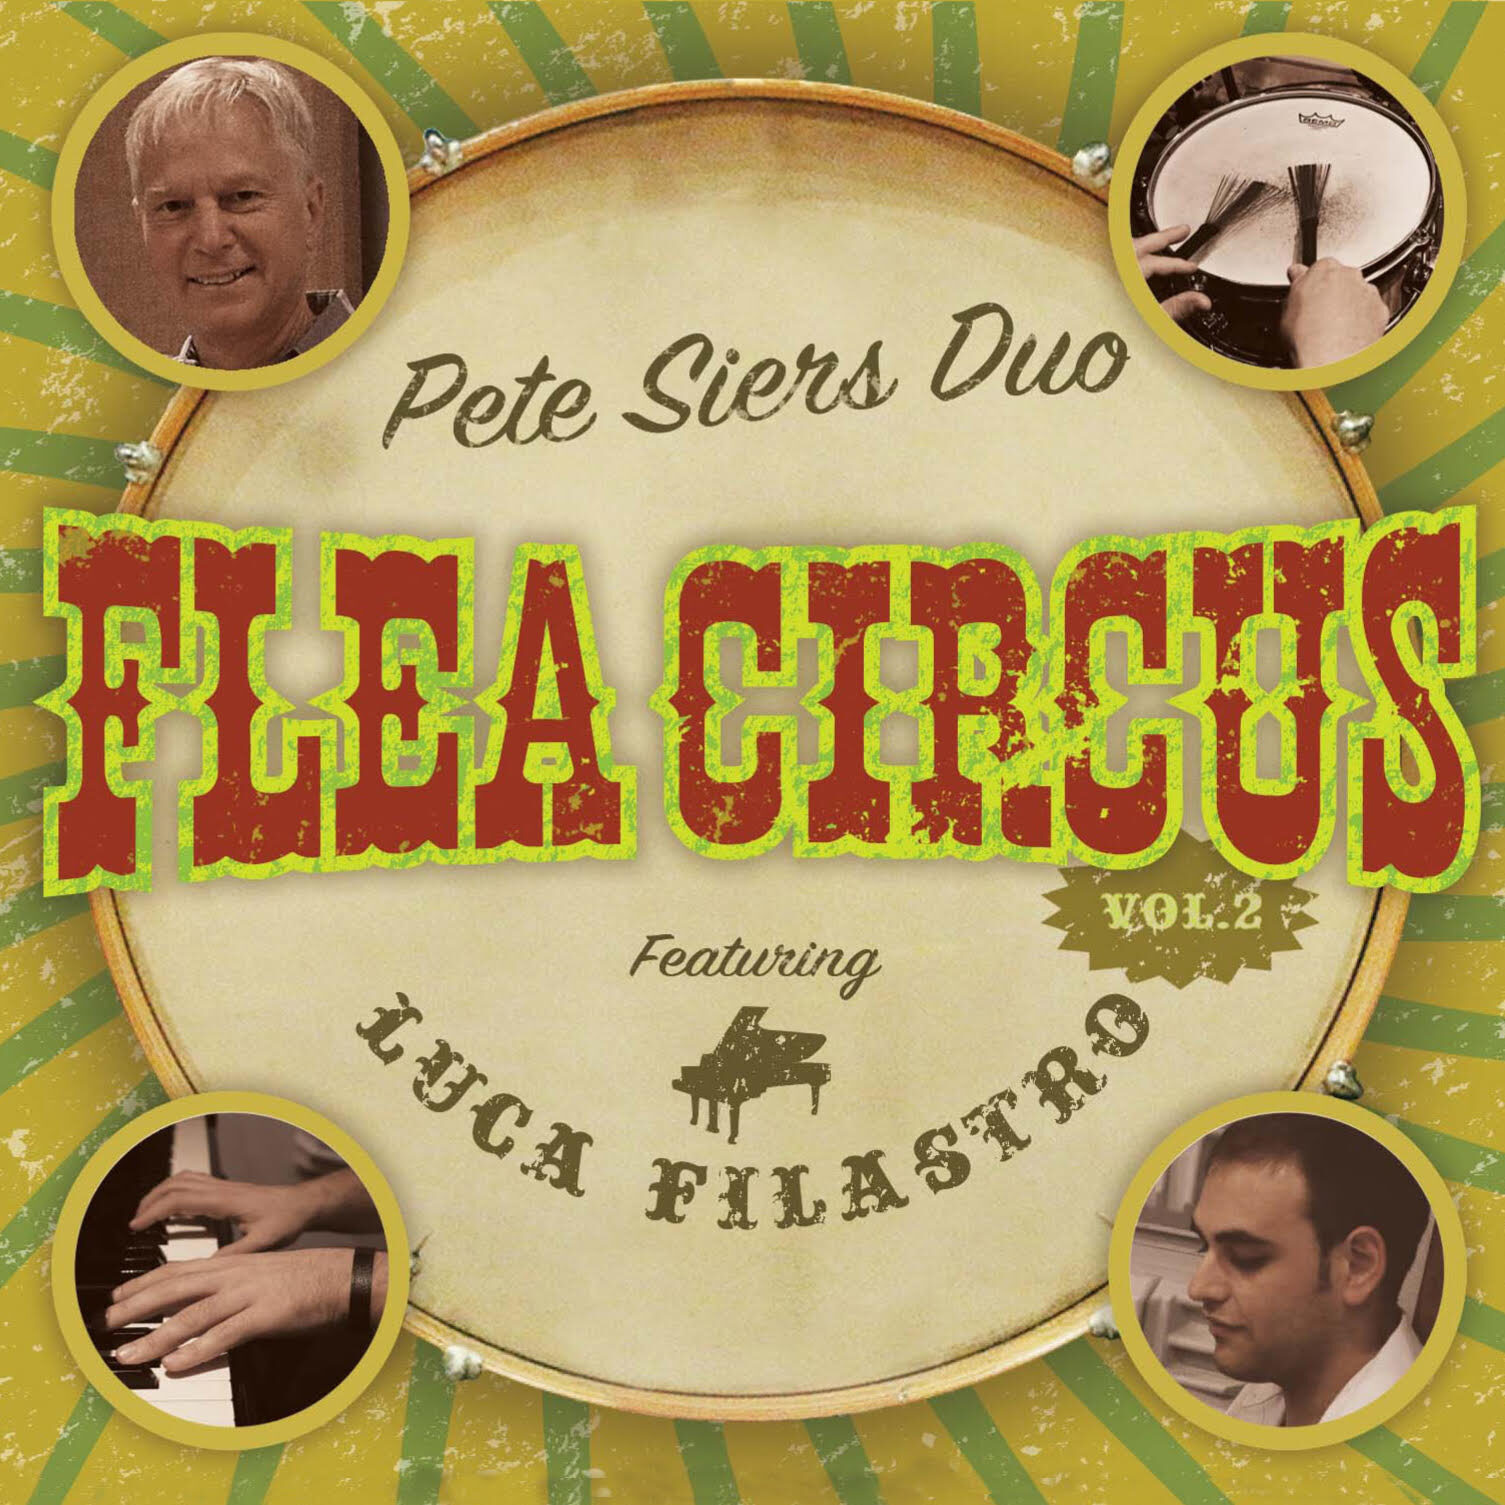 Flea-Circus-2